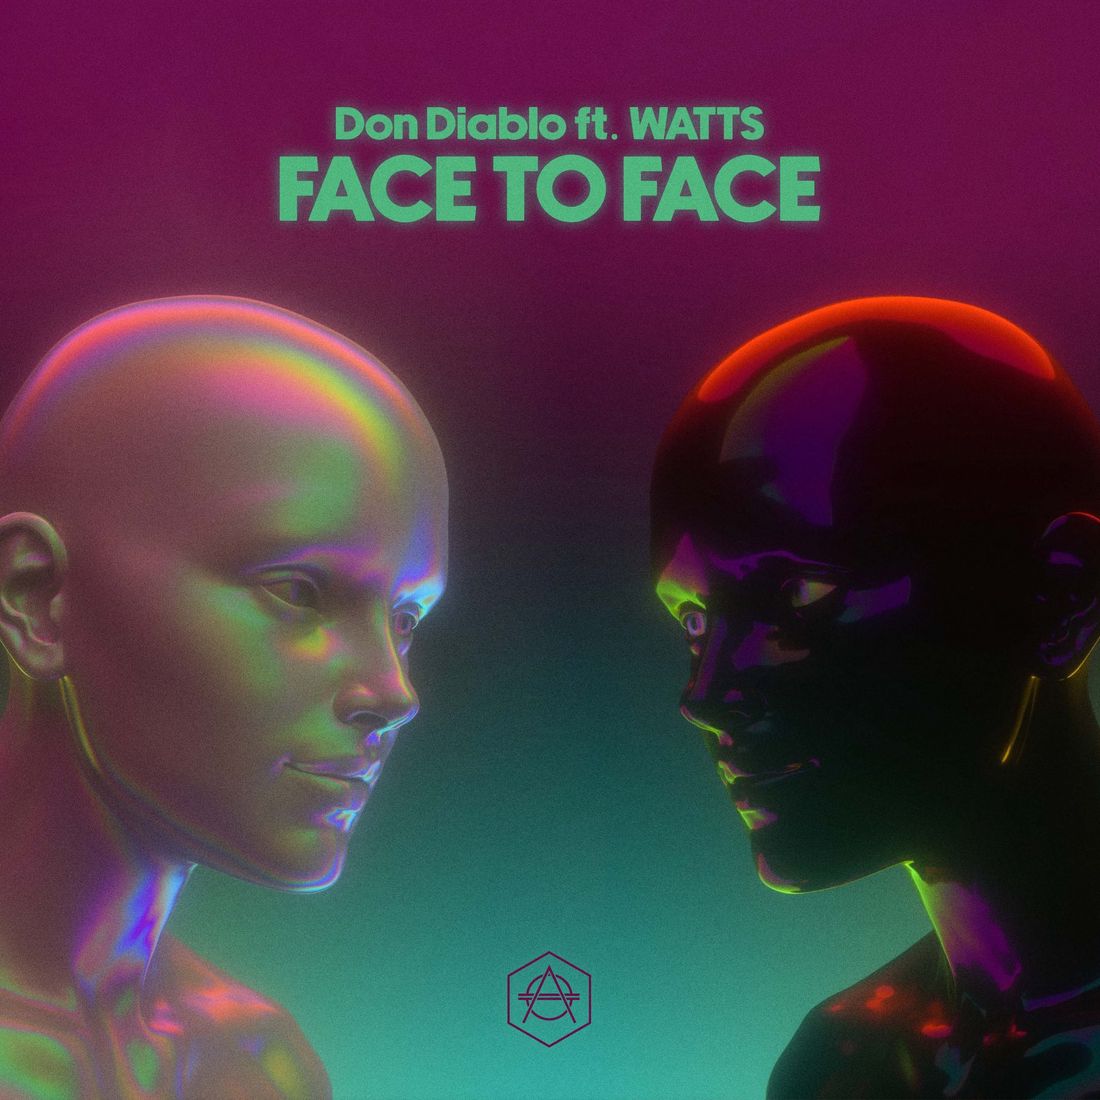 Don Diablo - Face to Face